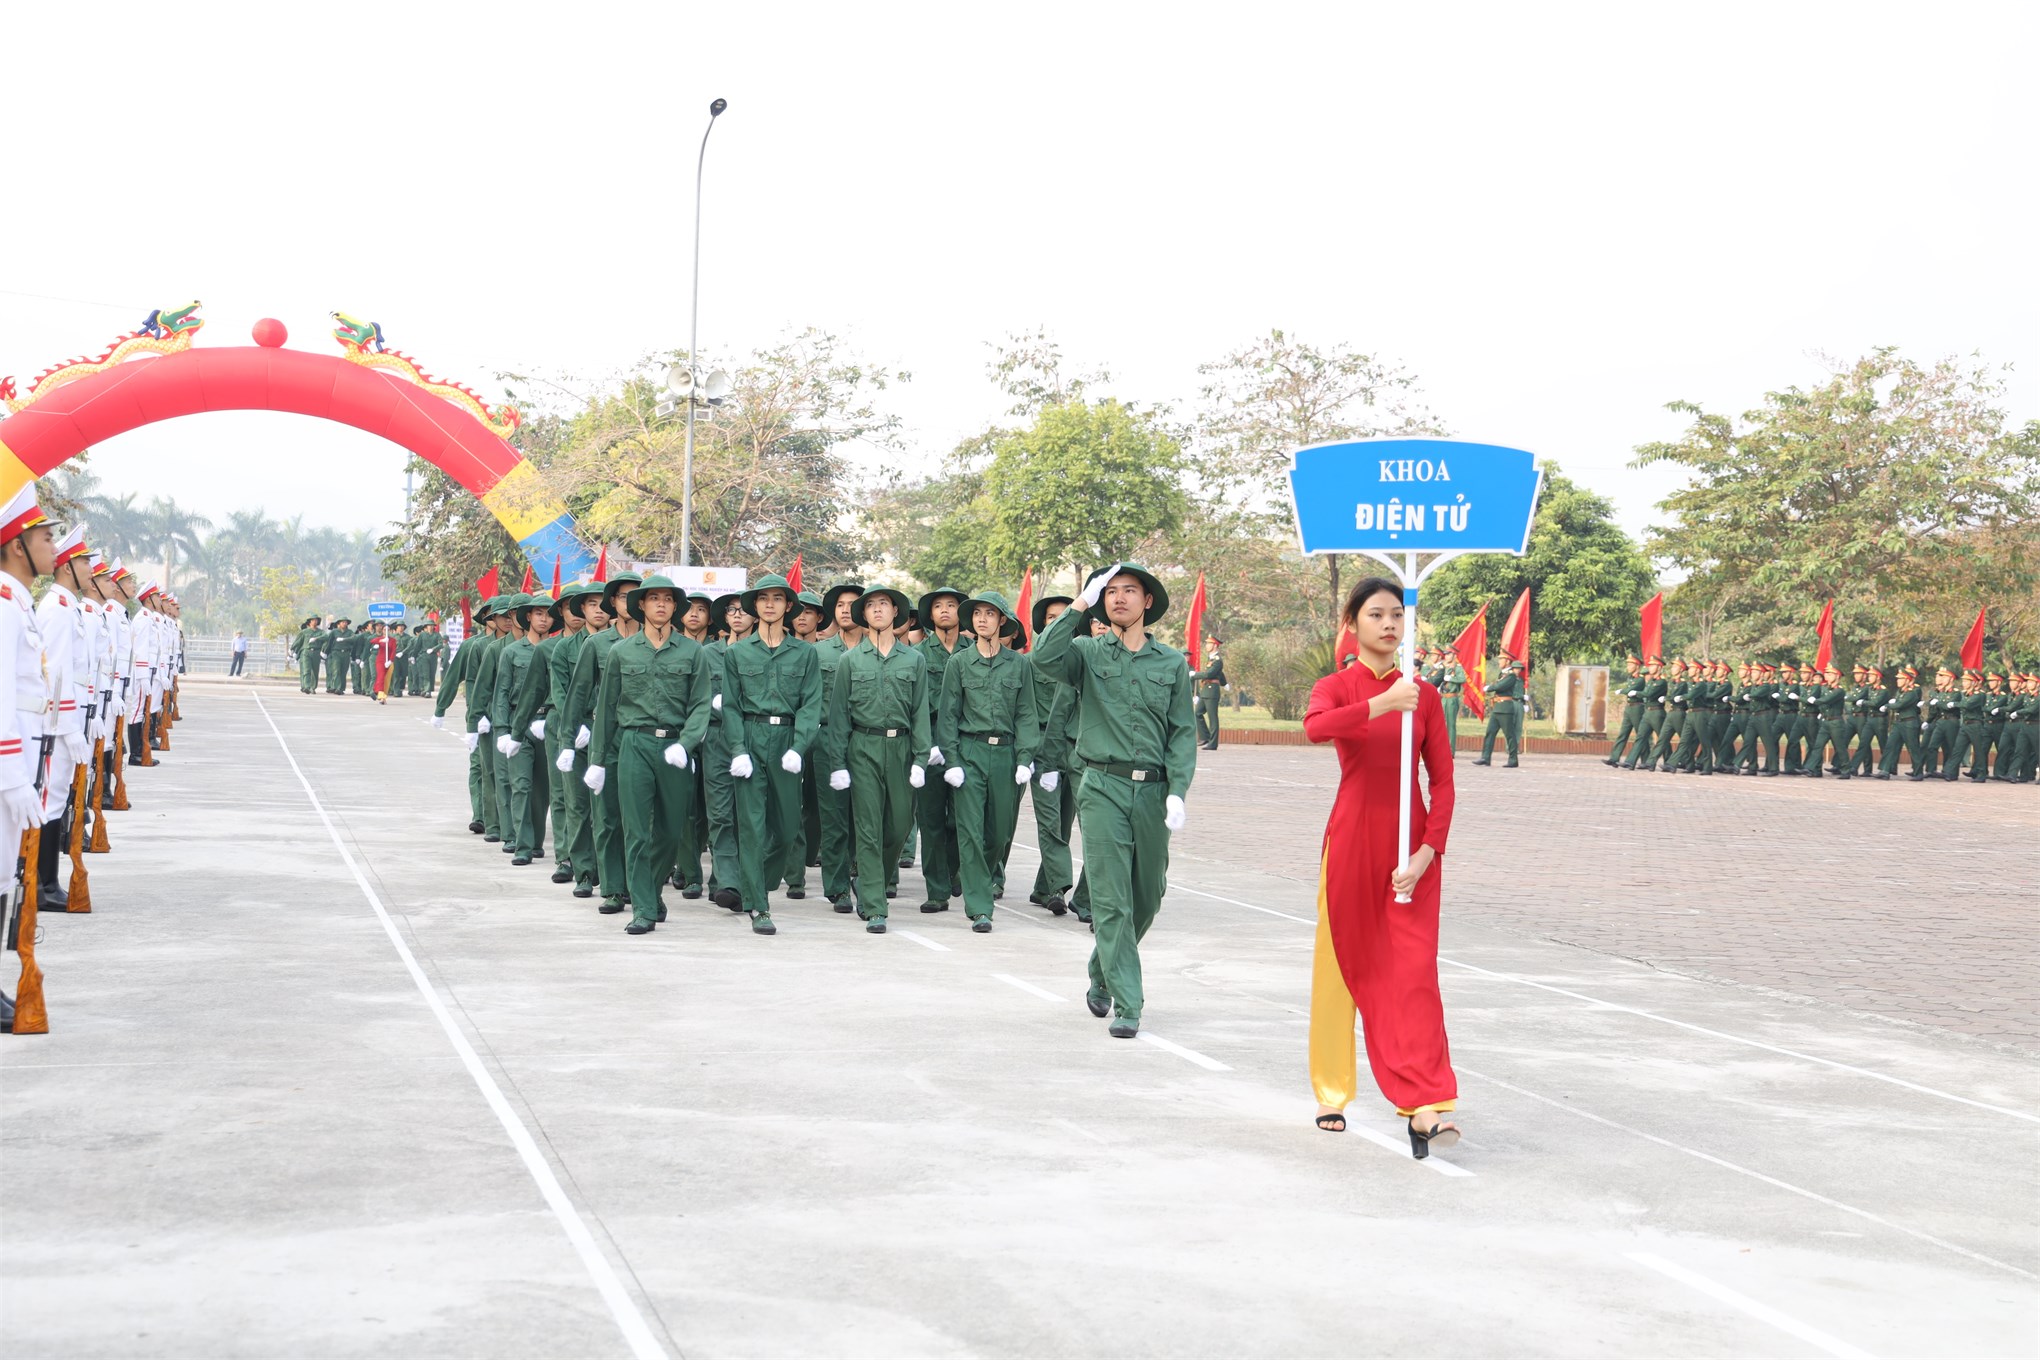 Chương trình diễu hành, duyệt đội ngũ chào mừng khai giảng năm học 2022-2023